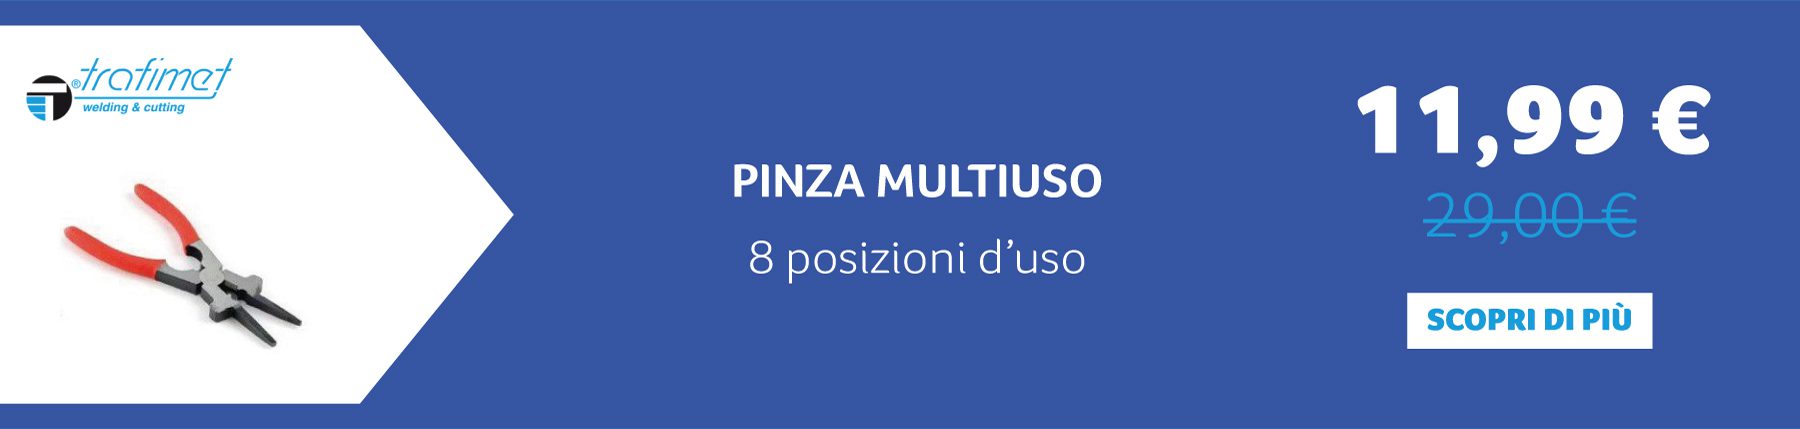 TRAFIMET - PINZA MULTIUSO 8 posizioni d’uso. 11,99 € anziché 29,00 €